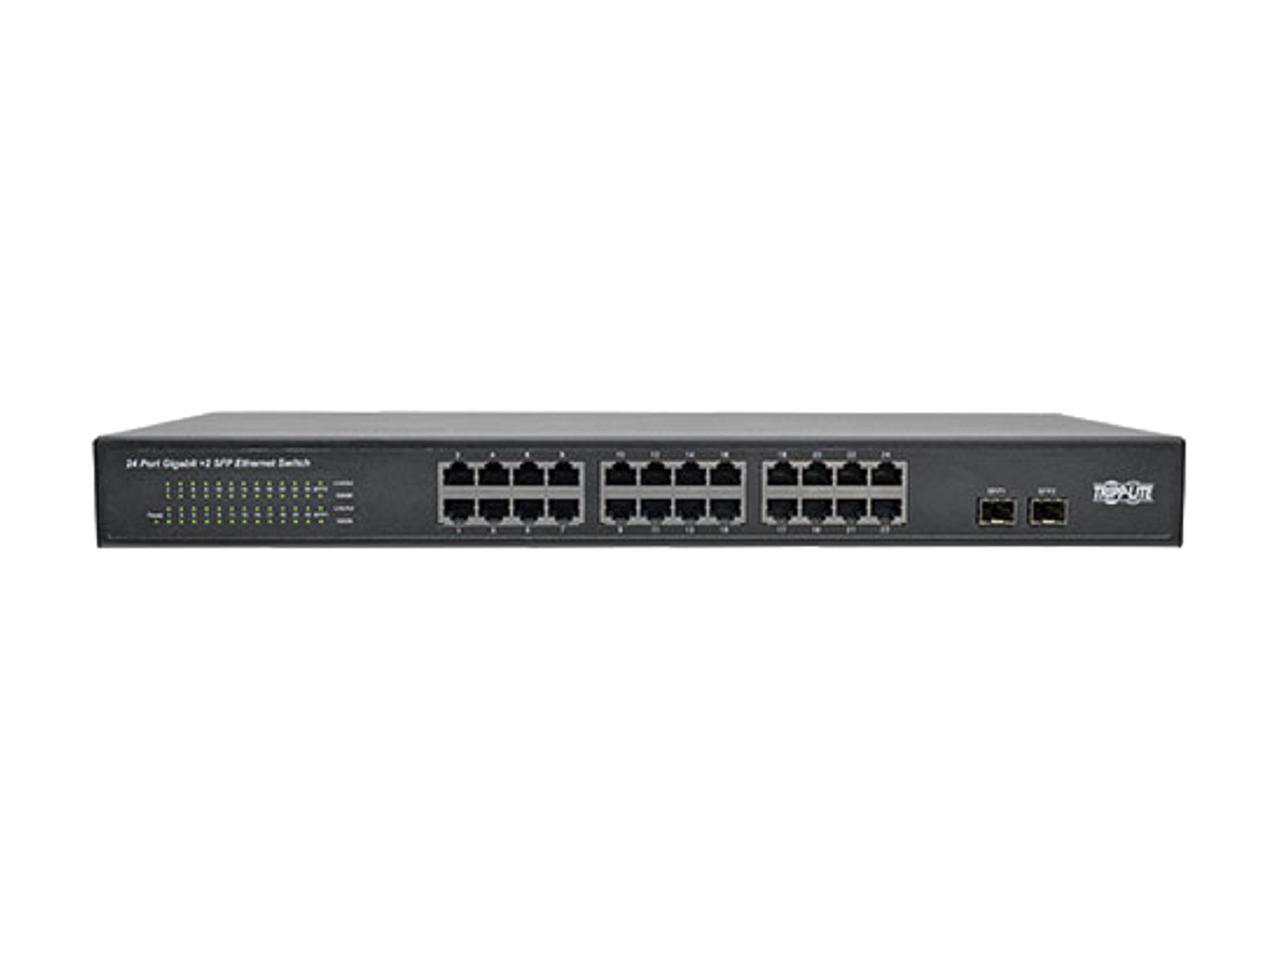 Tripp Lite 24-Port Rack-Mount/Desktop Gigabit Ethernet Unmanaged Switch, 10/100/1000 Mbps, 2 Gigabit SFP Ports, Metal Housing, 1URM (NG24) - image 2 of 5